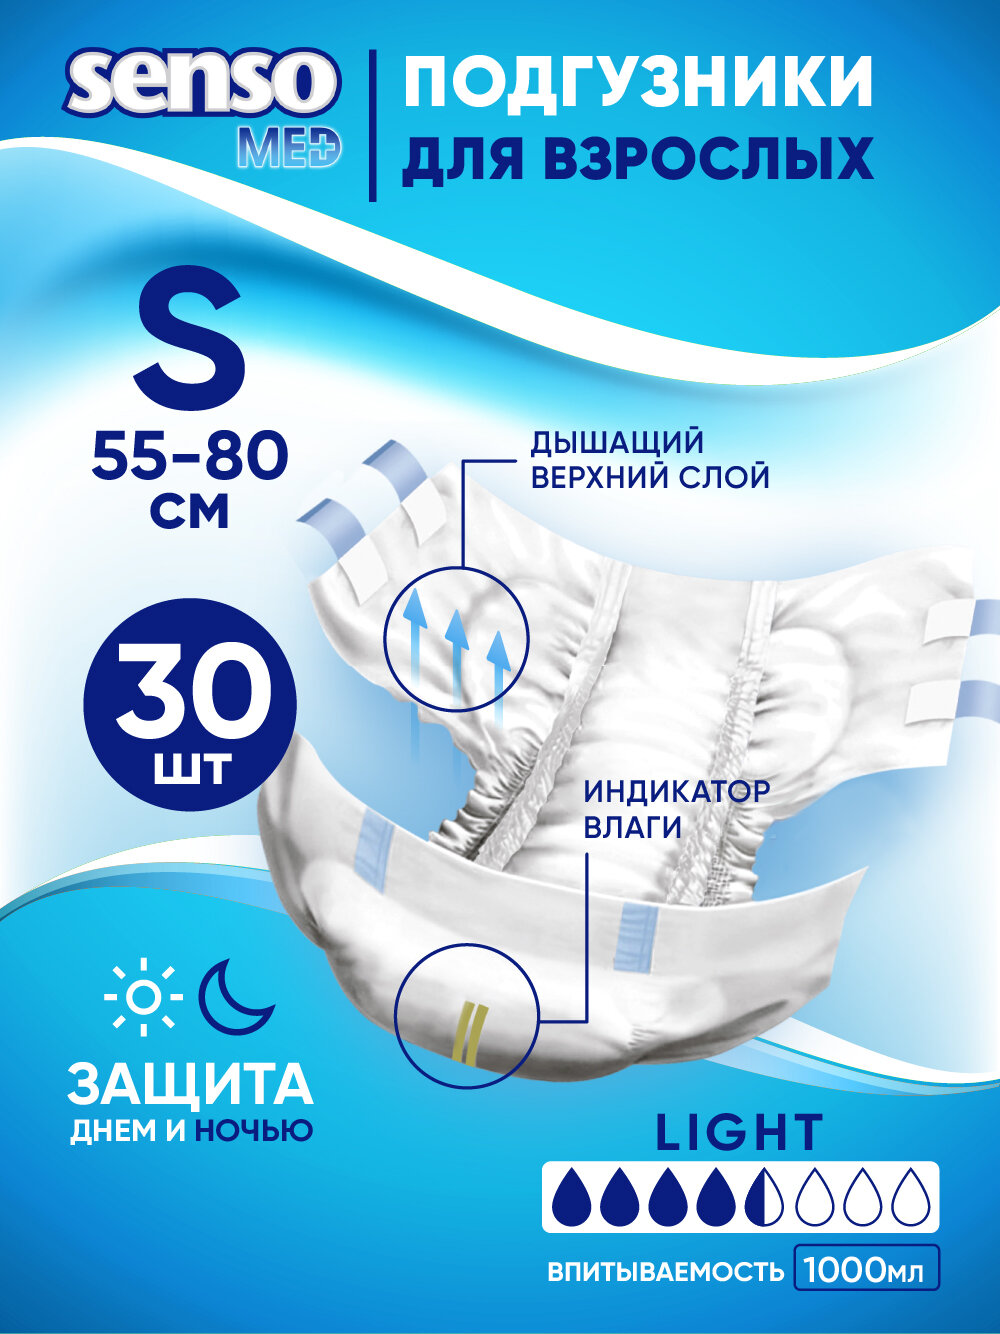 Подгузники для взрослых "Senso Med" Light S (55-80) 30шт.